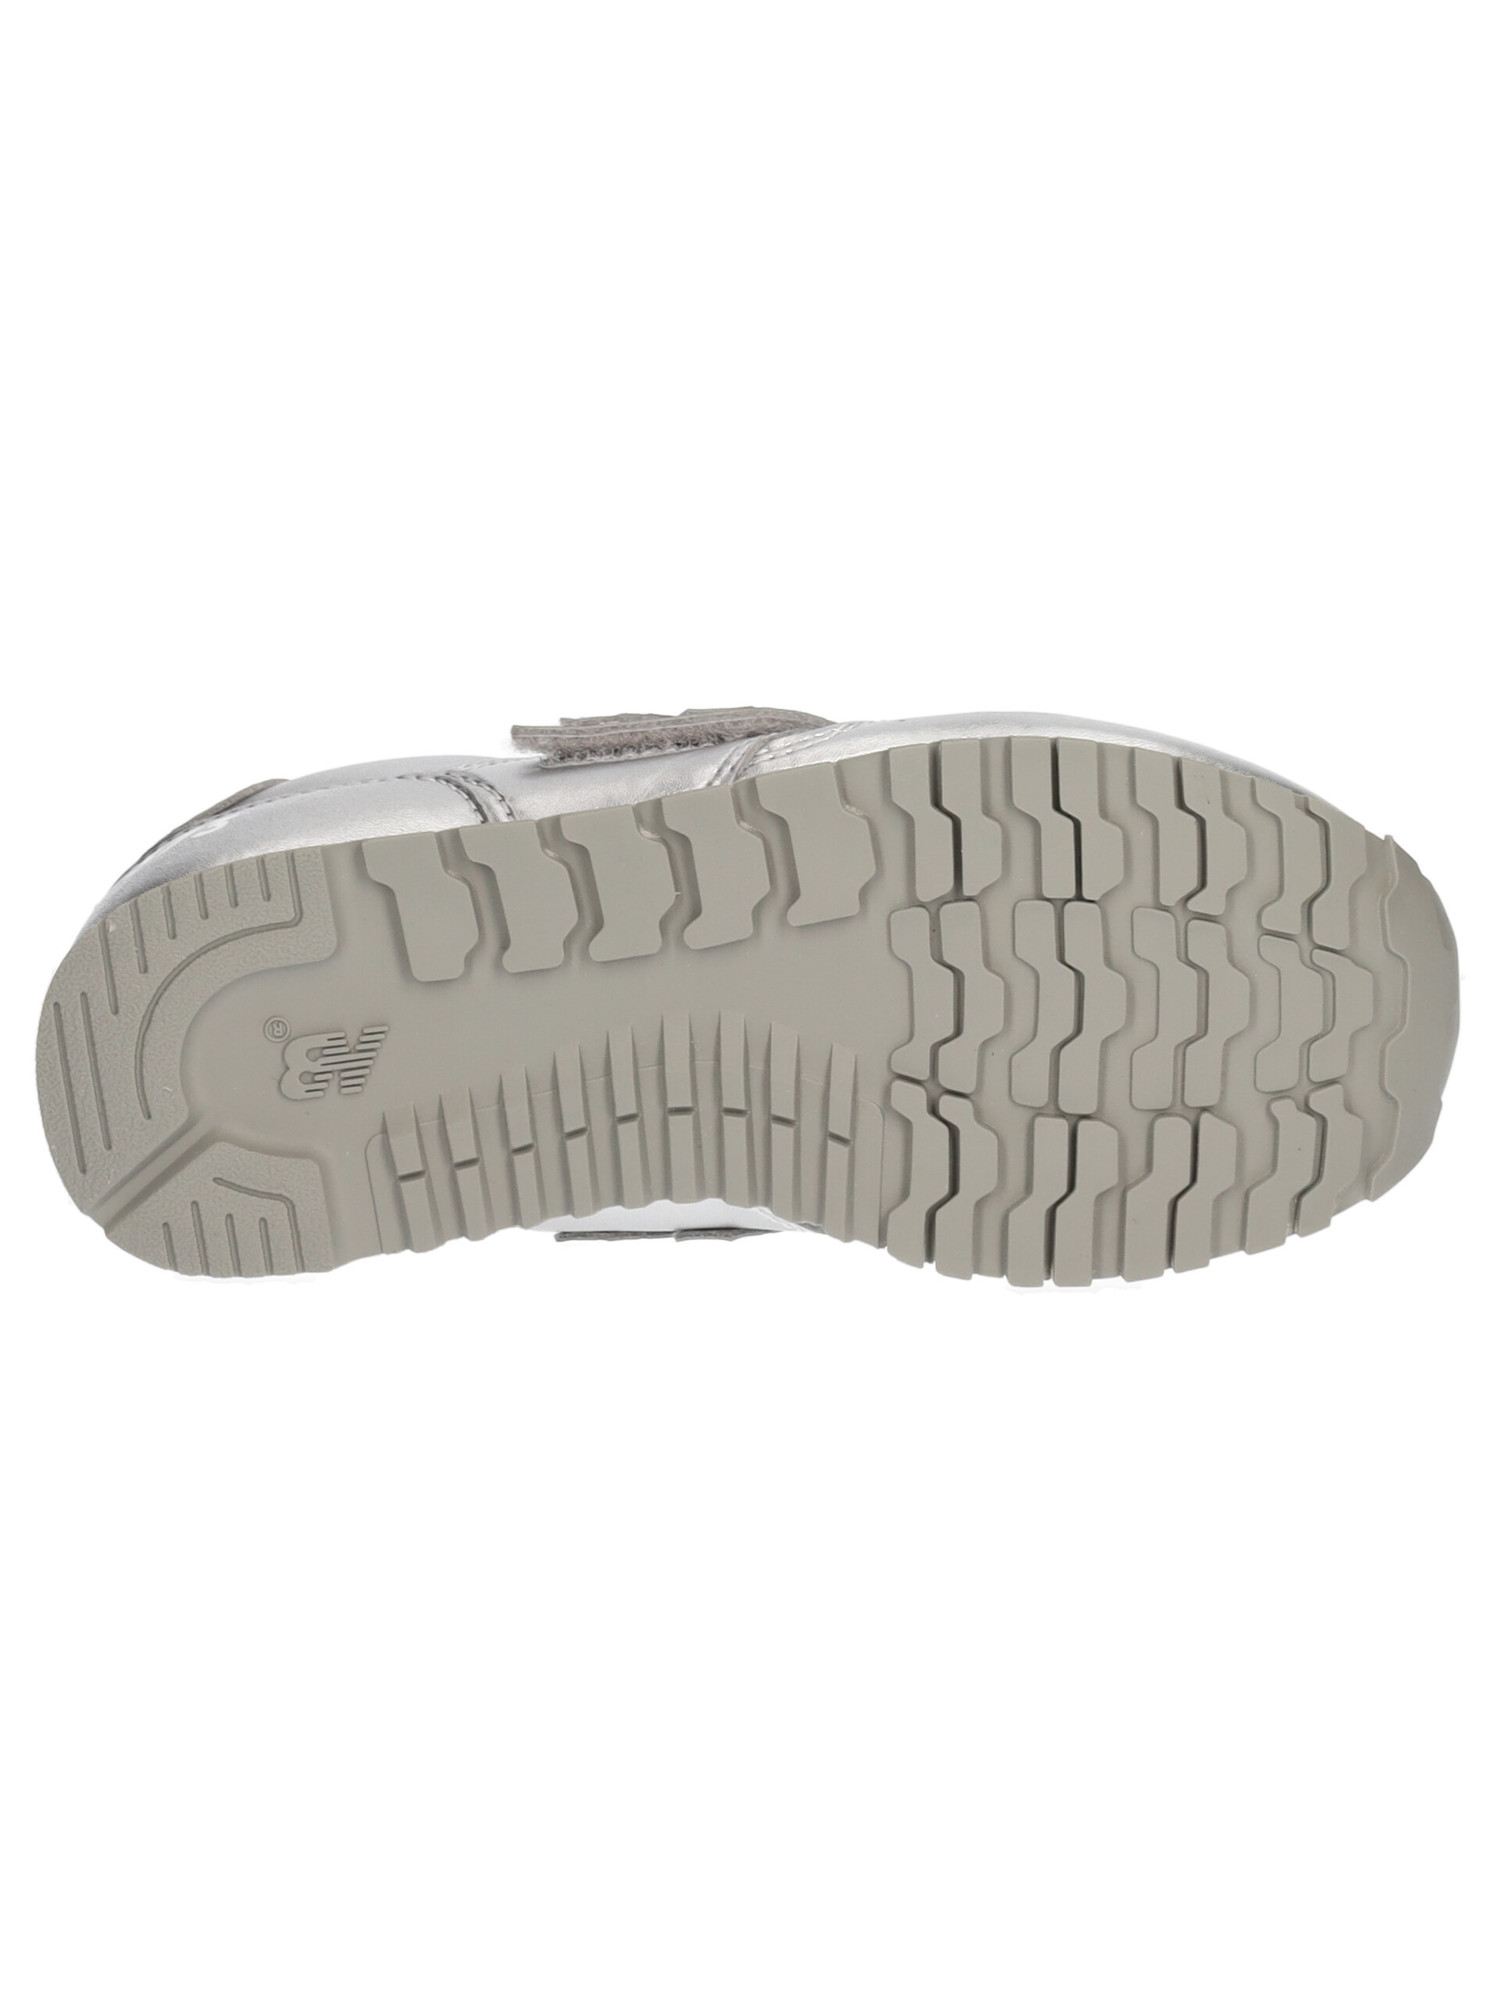 sneaker-new-balance-500-da-bambina-argento